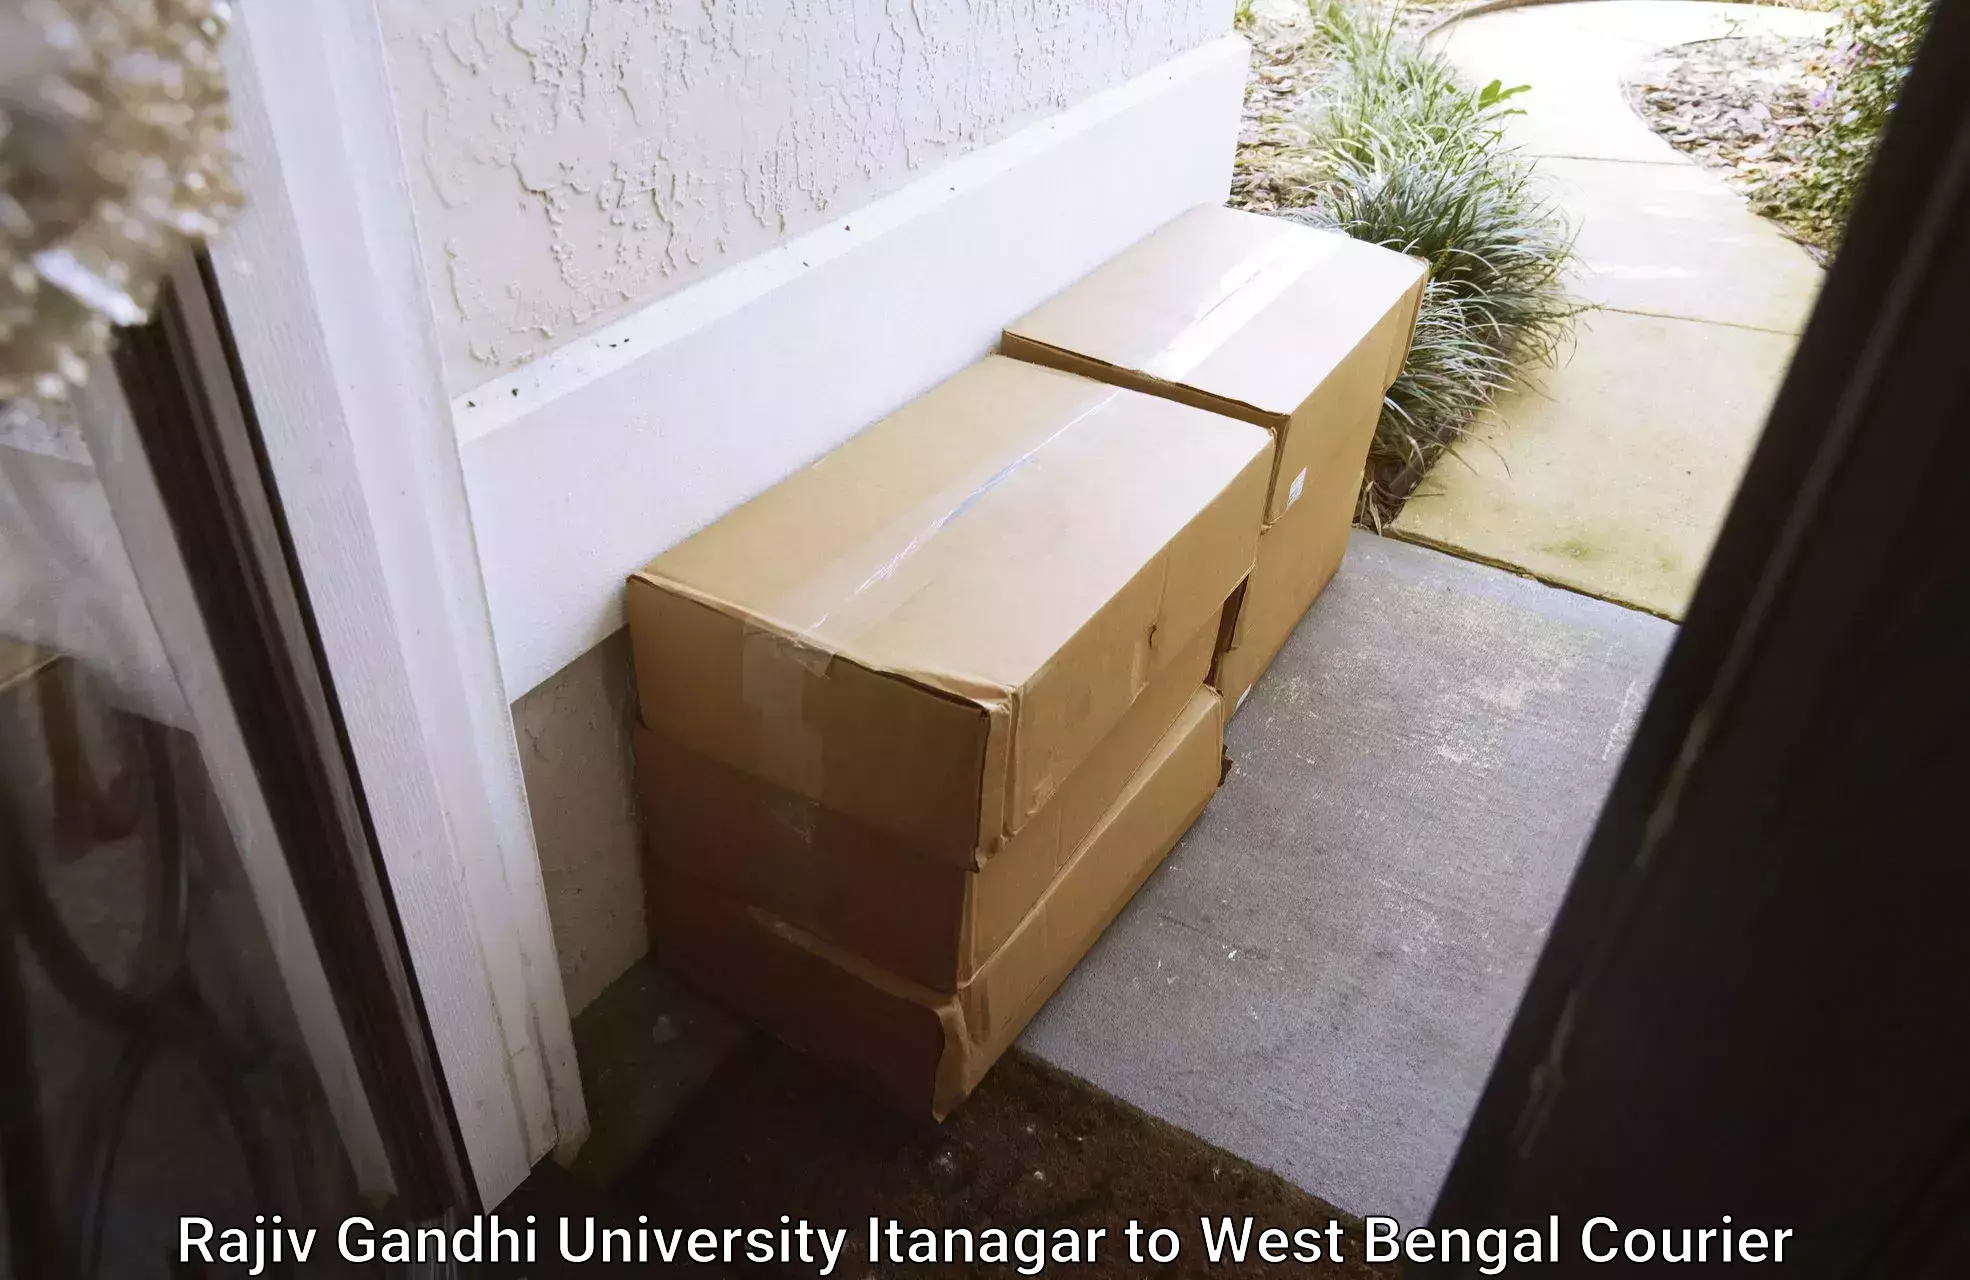 Large package courier in Rajiv Gandhi University Itanagar to Kolaghat